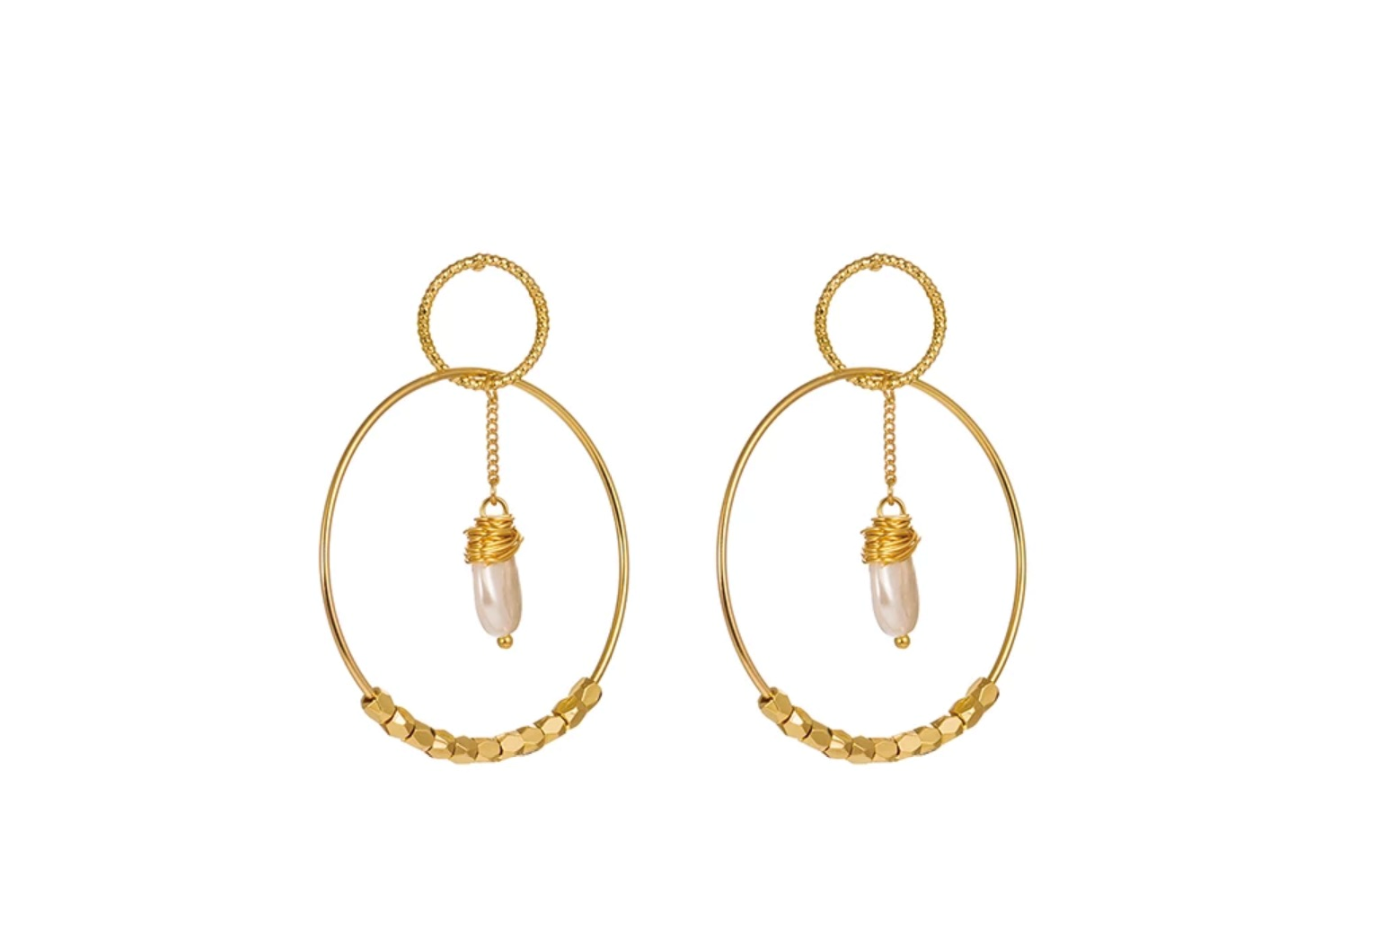 Gold Pearl Double Hoop Earrings for Women